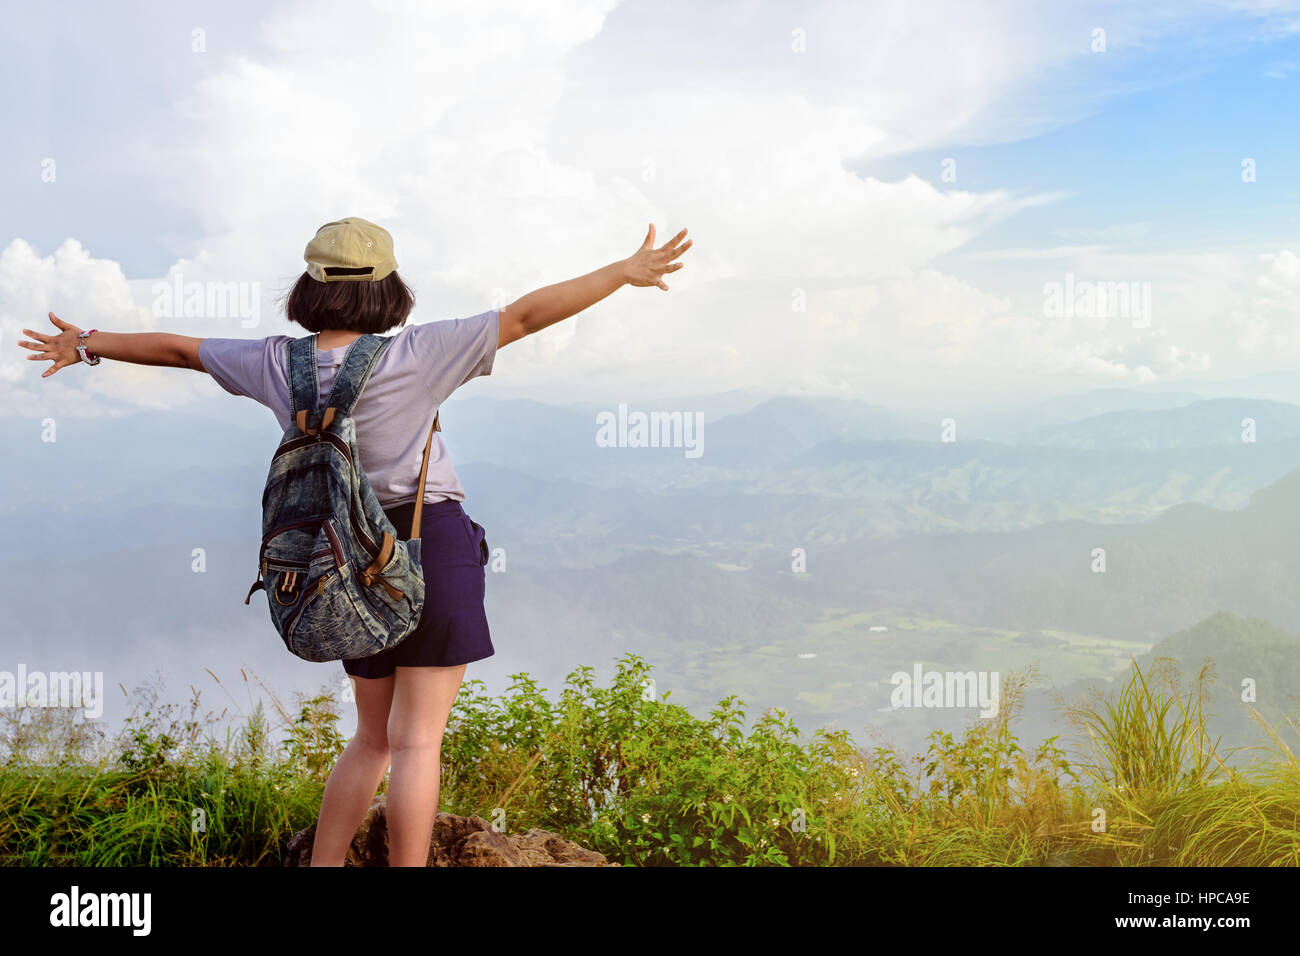 Los adolescentes niña feliz excursionista con mochila y tapar los brazos abiertos mirando la hermosa naturaleza paisaje de alta montaña en el mirador del Parque Forestal de Phu Chi Fa Foto de stock